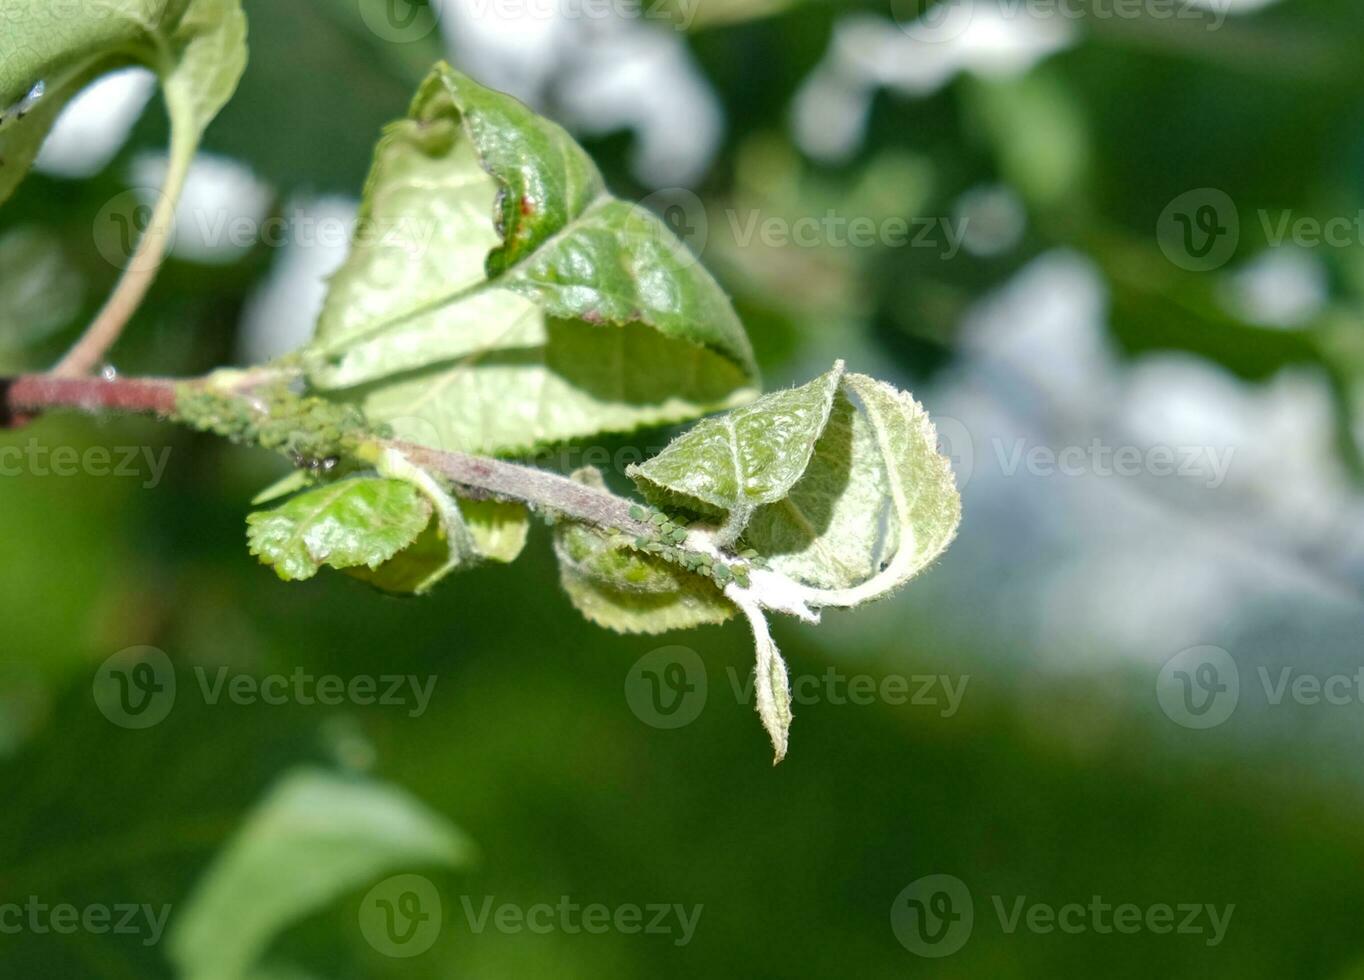 de cerca de áfido colonia - aphididae y hormigas - en aple árbol hoja. macro foto de insecto parásito - planta piojos, pulgón, mosca negra o mosca blanca - succión jugo desde planta.